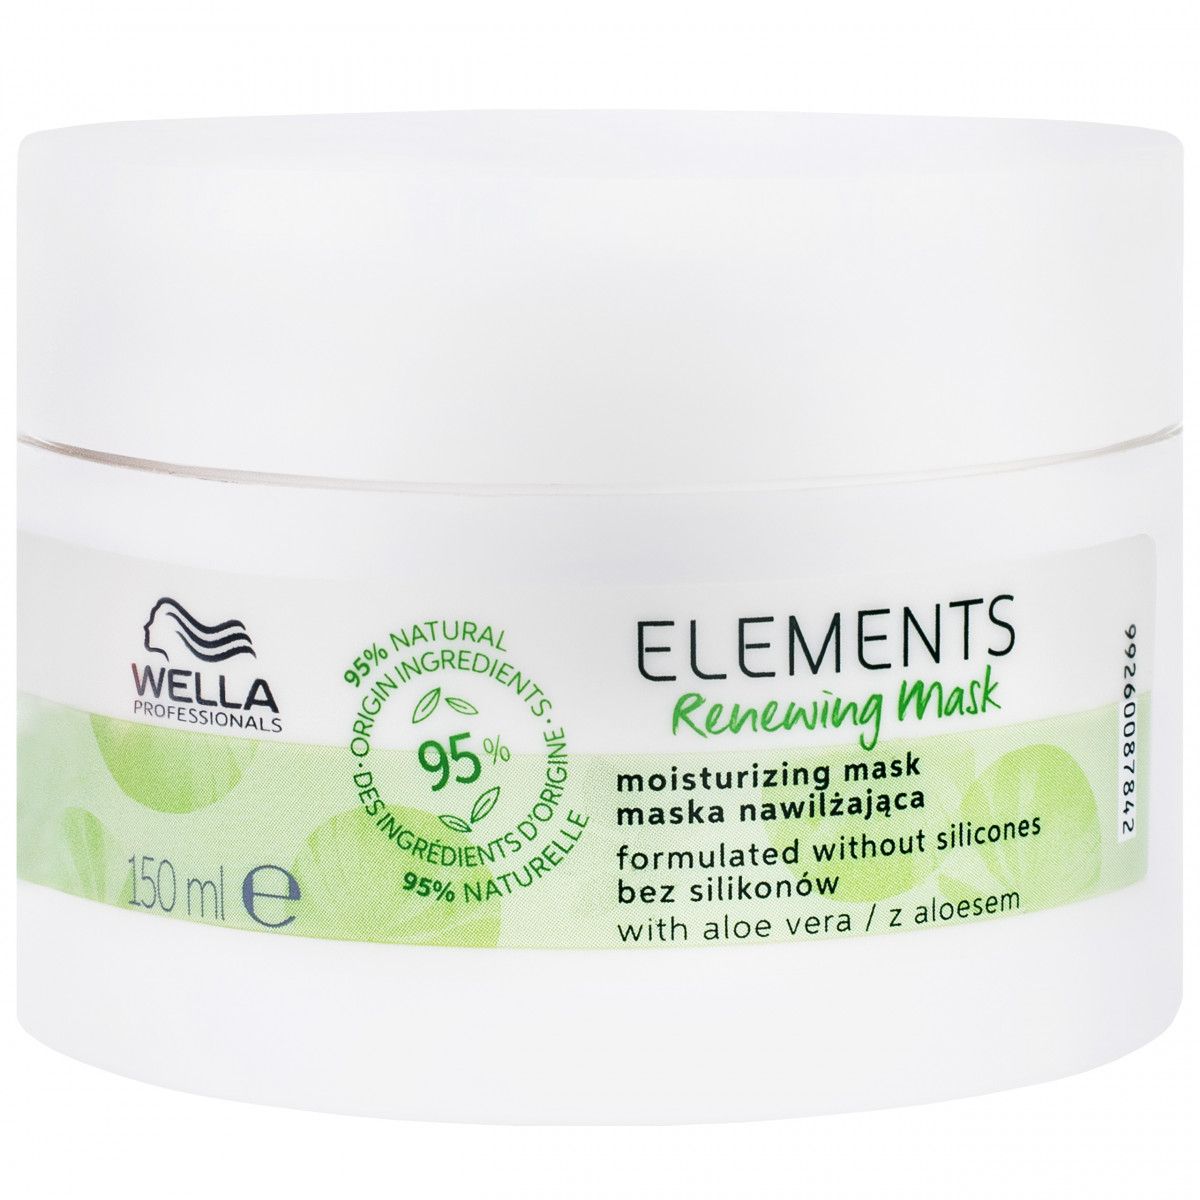 Wella Elements Renewing regenerująca maska do włosów 150 ml